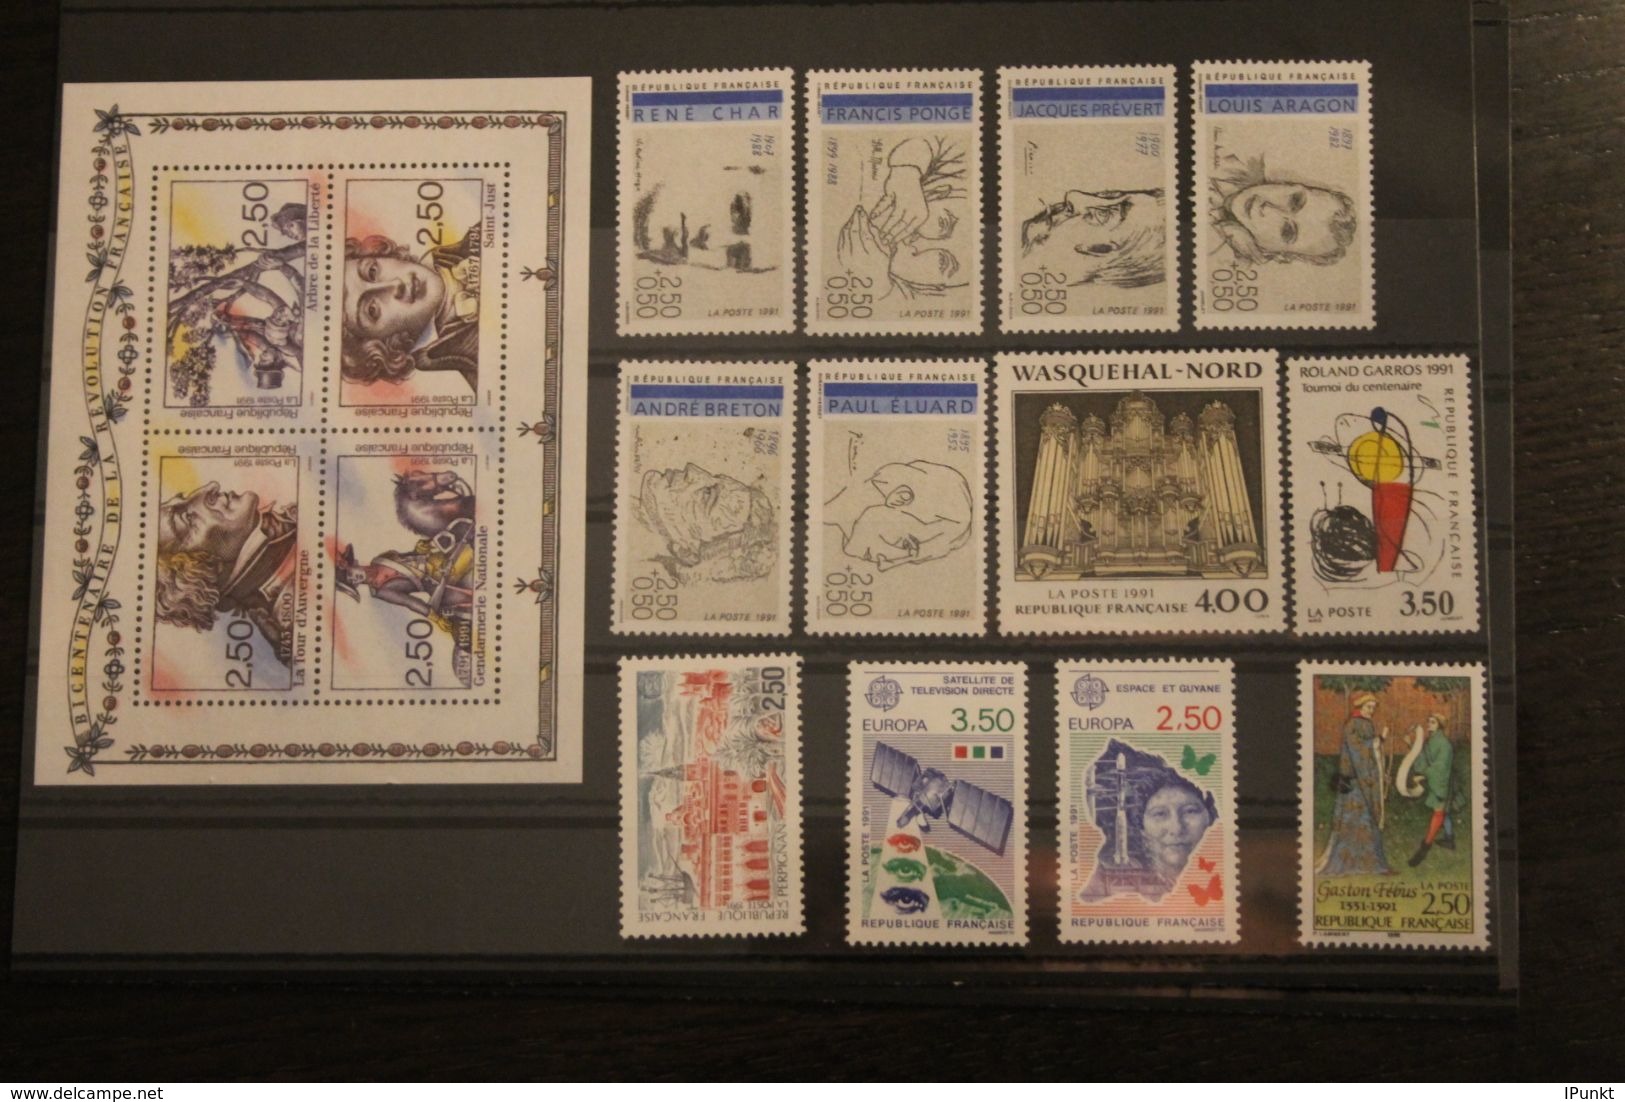 France 1991, 2815-2870; Postfrisch, Frankreich Jahrgang 1991, 51 Werte, 1 Block, 1 Markenheft,überkomplett 4 Steckkarten - 1990-1999